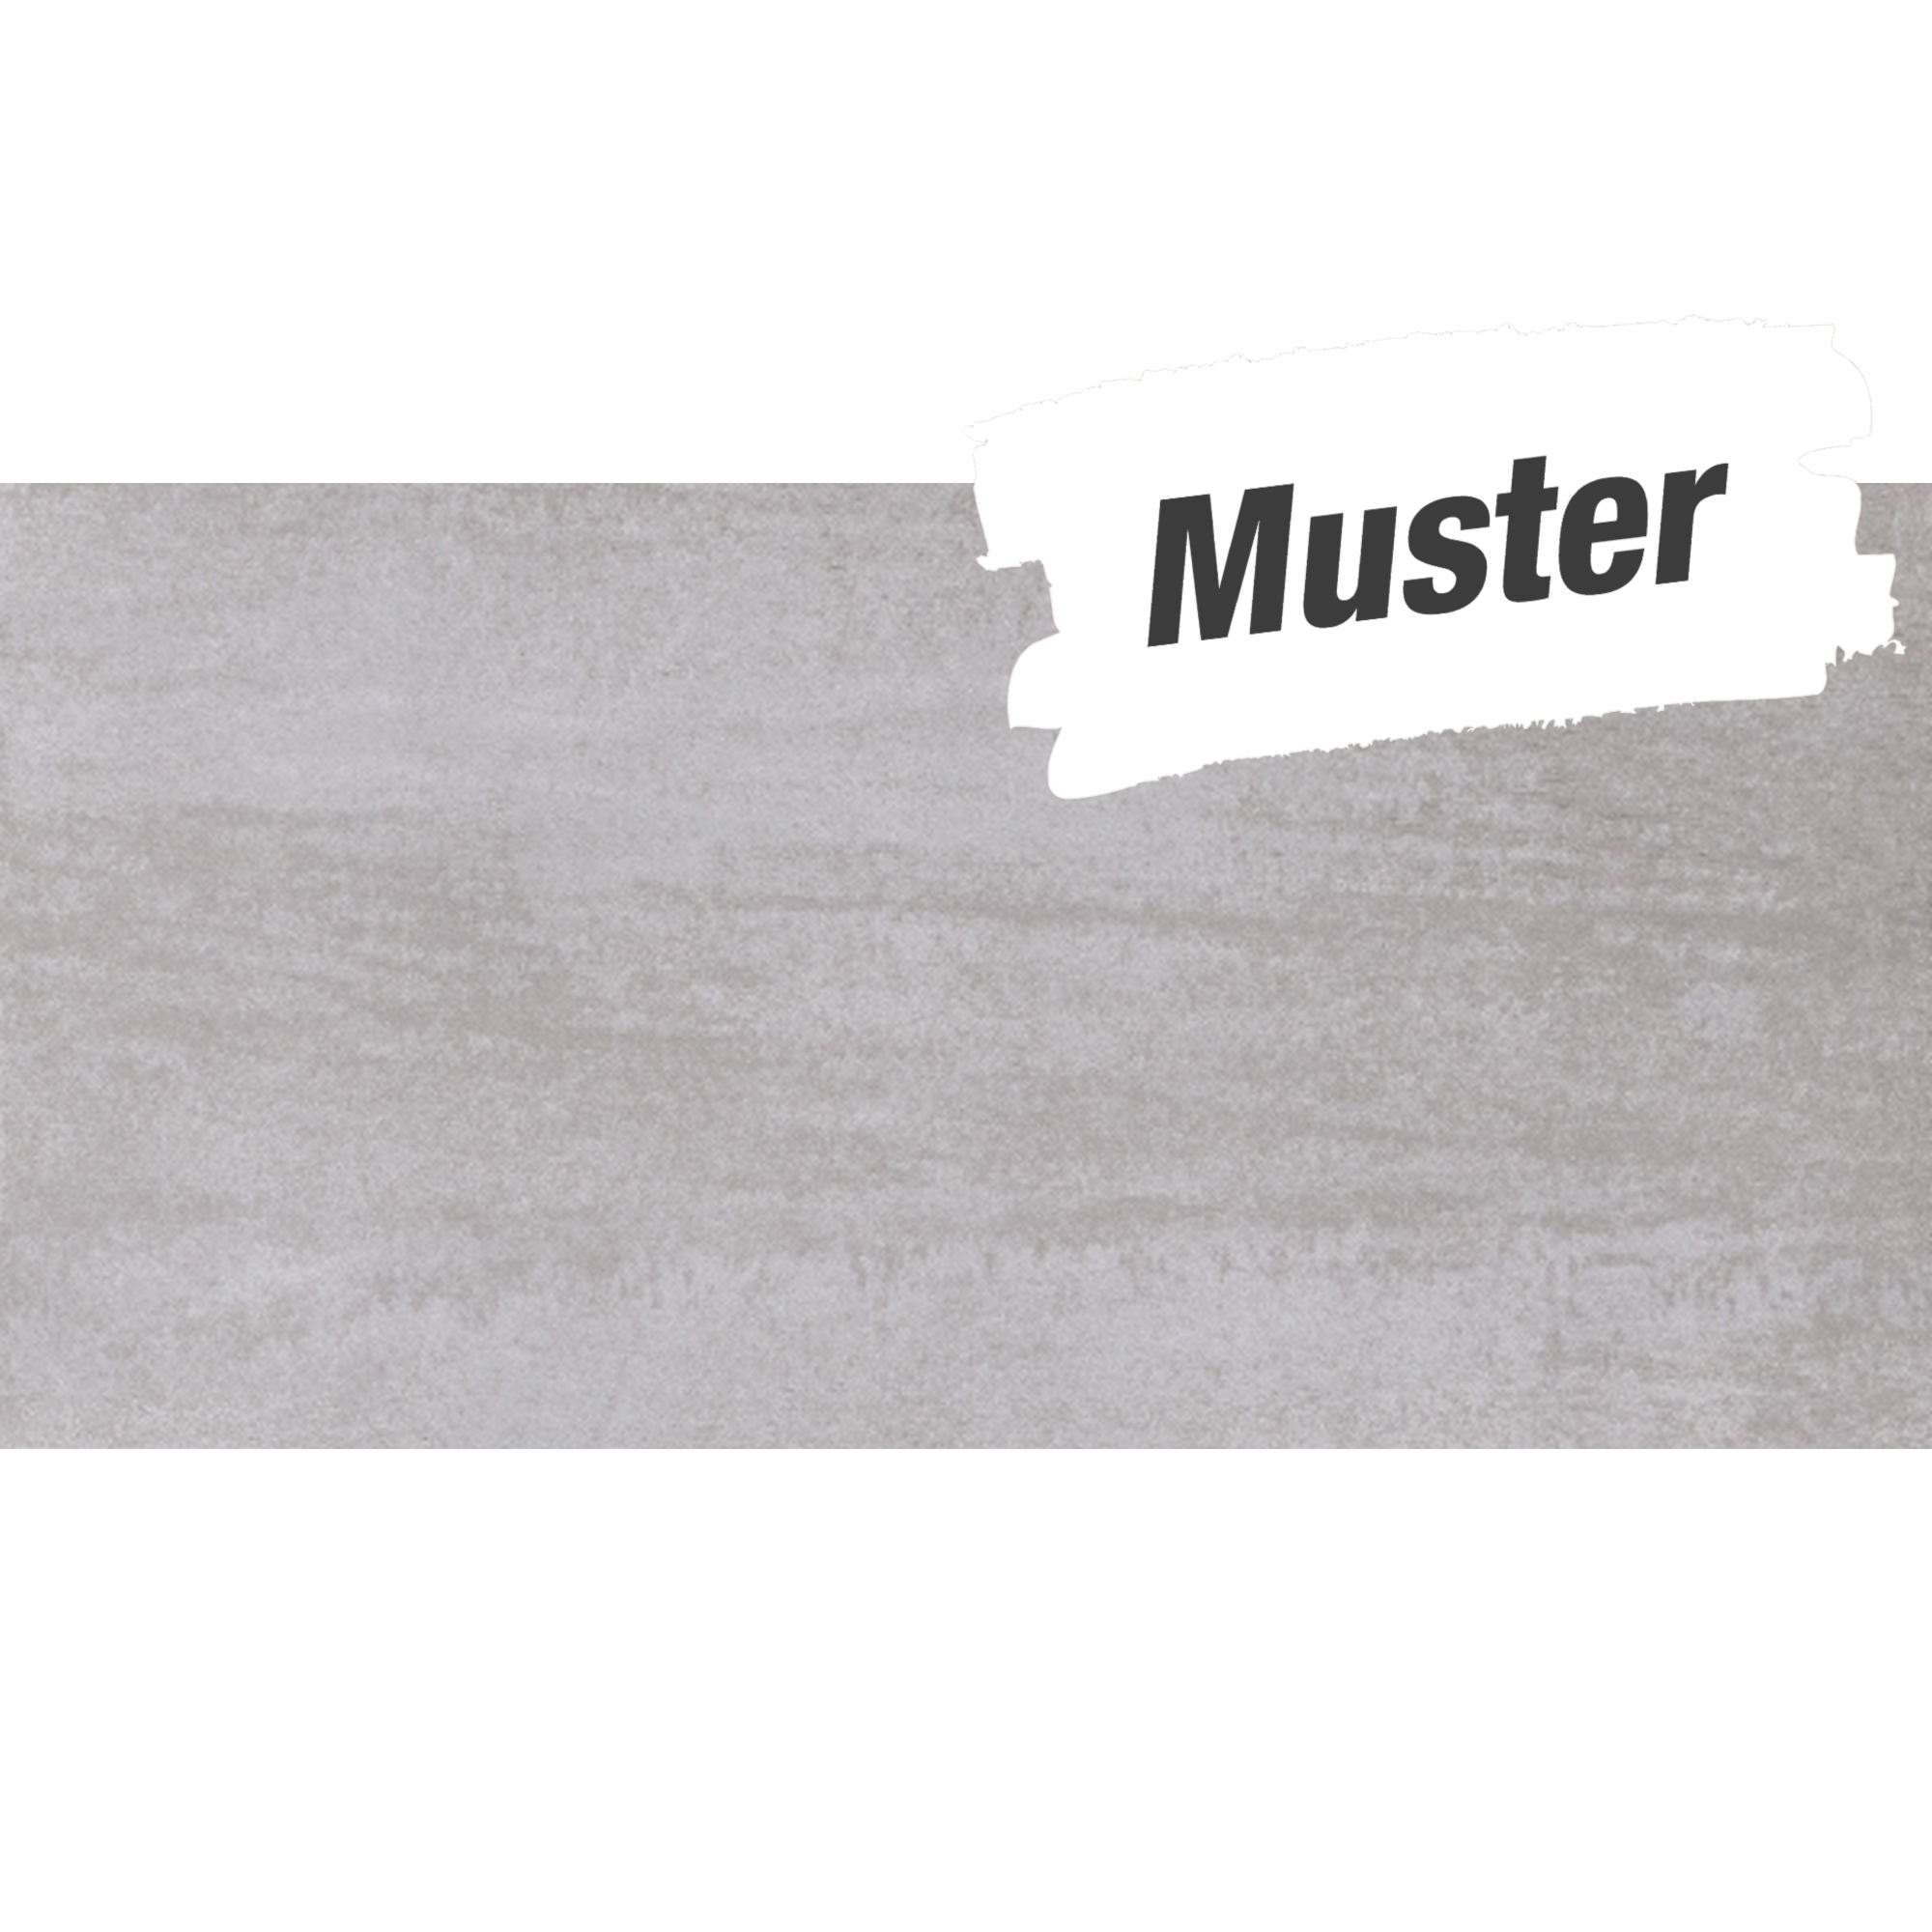 Muster zu Bodenfliese 'Corte' Feinsteinzeug grau 30,5 x 61 cm + product picture